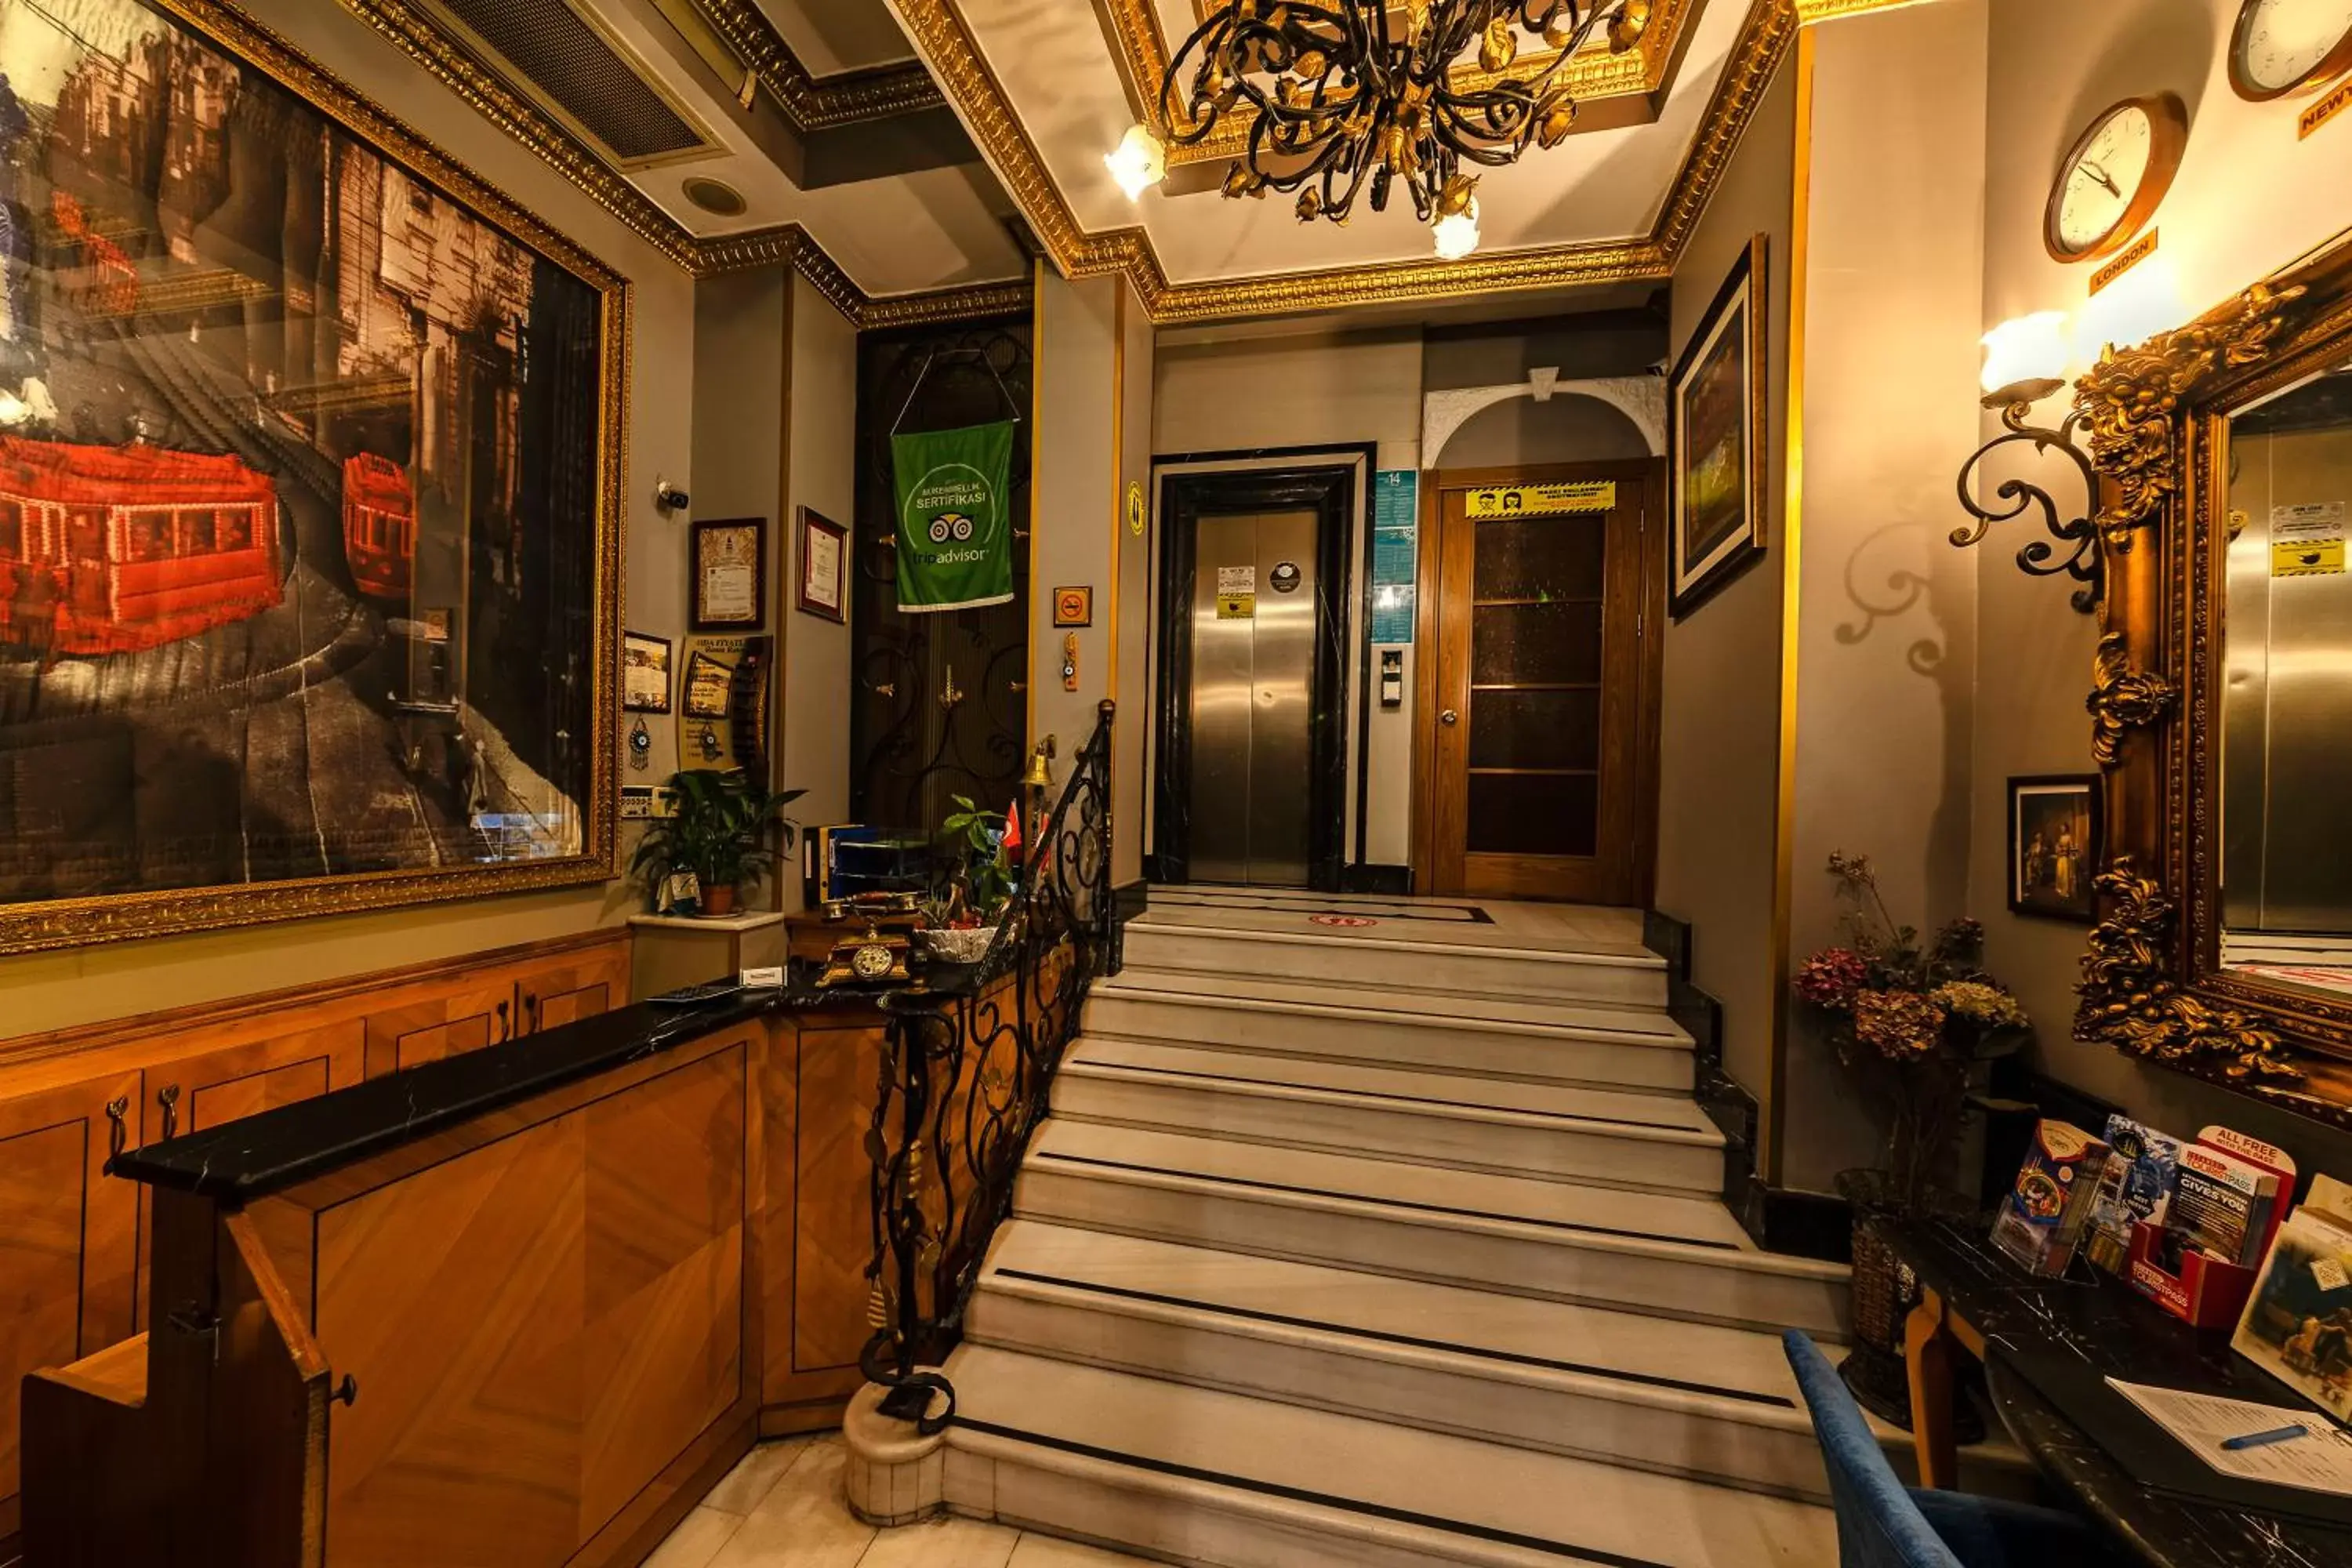 Lobby or reception in Santa Ottoman Hotel